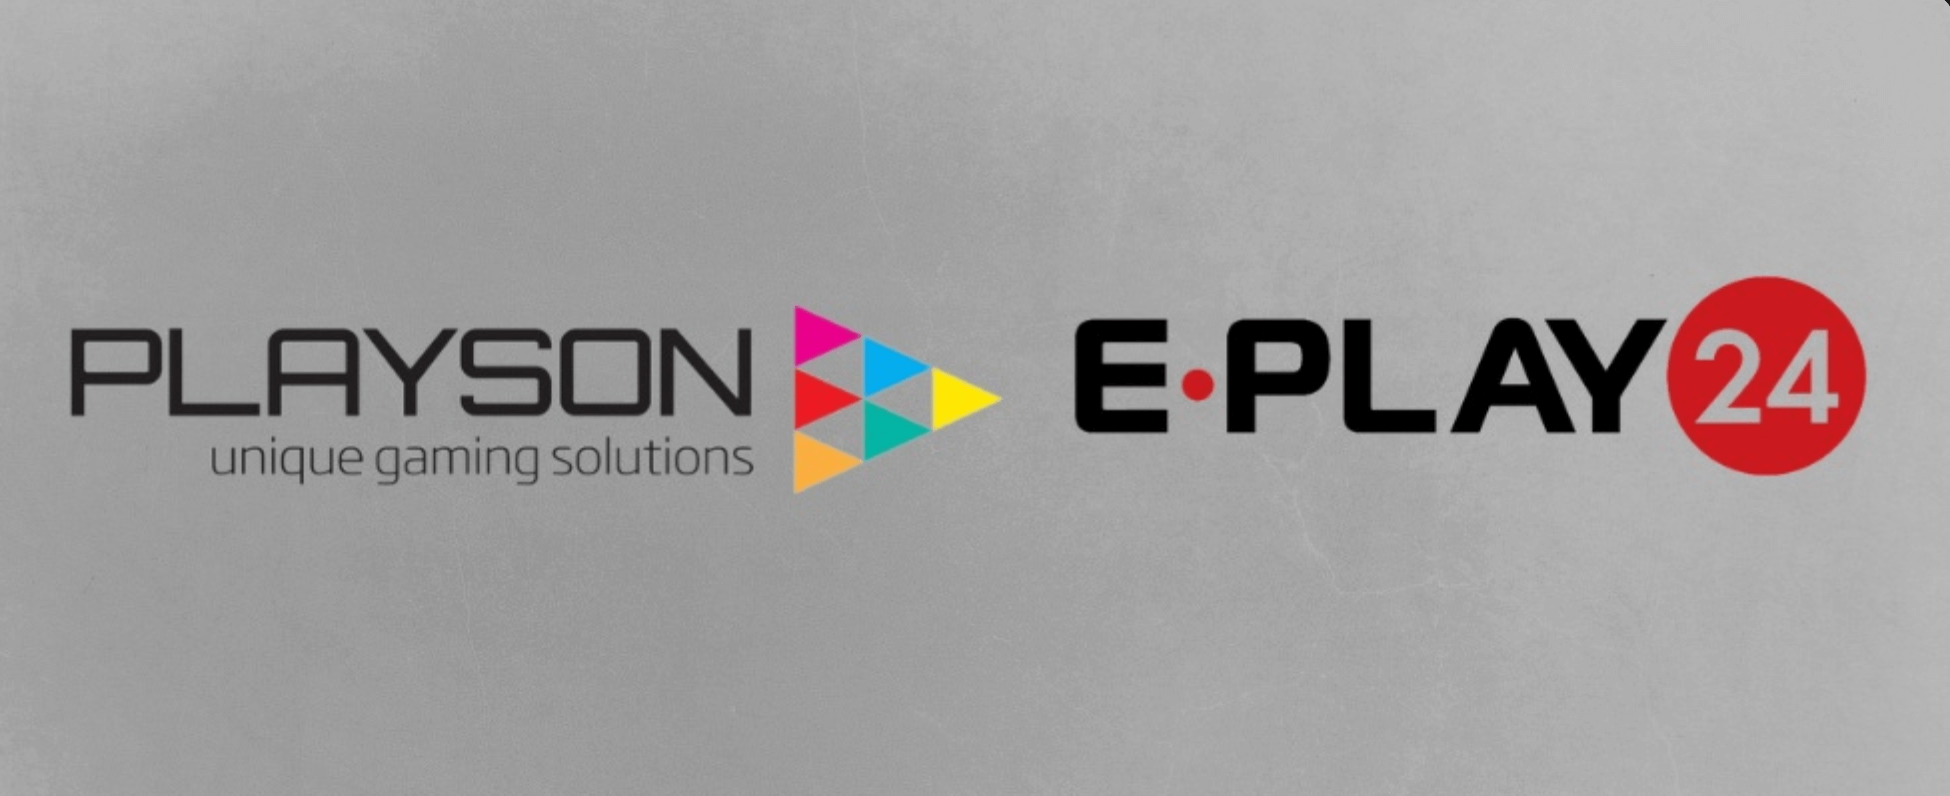 Nhà cung cấp Playson hợp tác với E-Play24